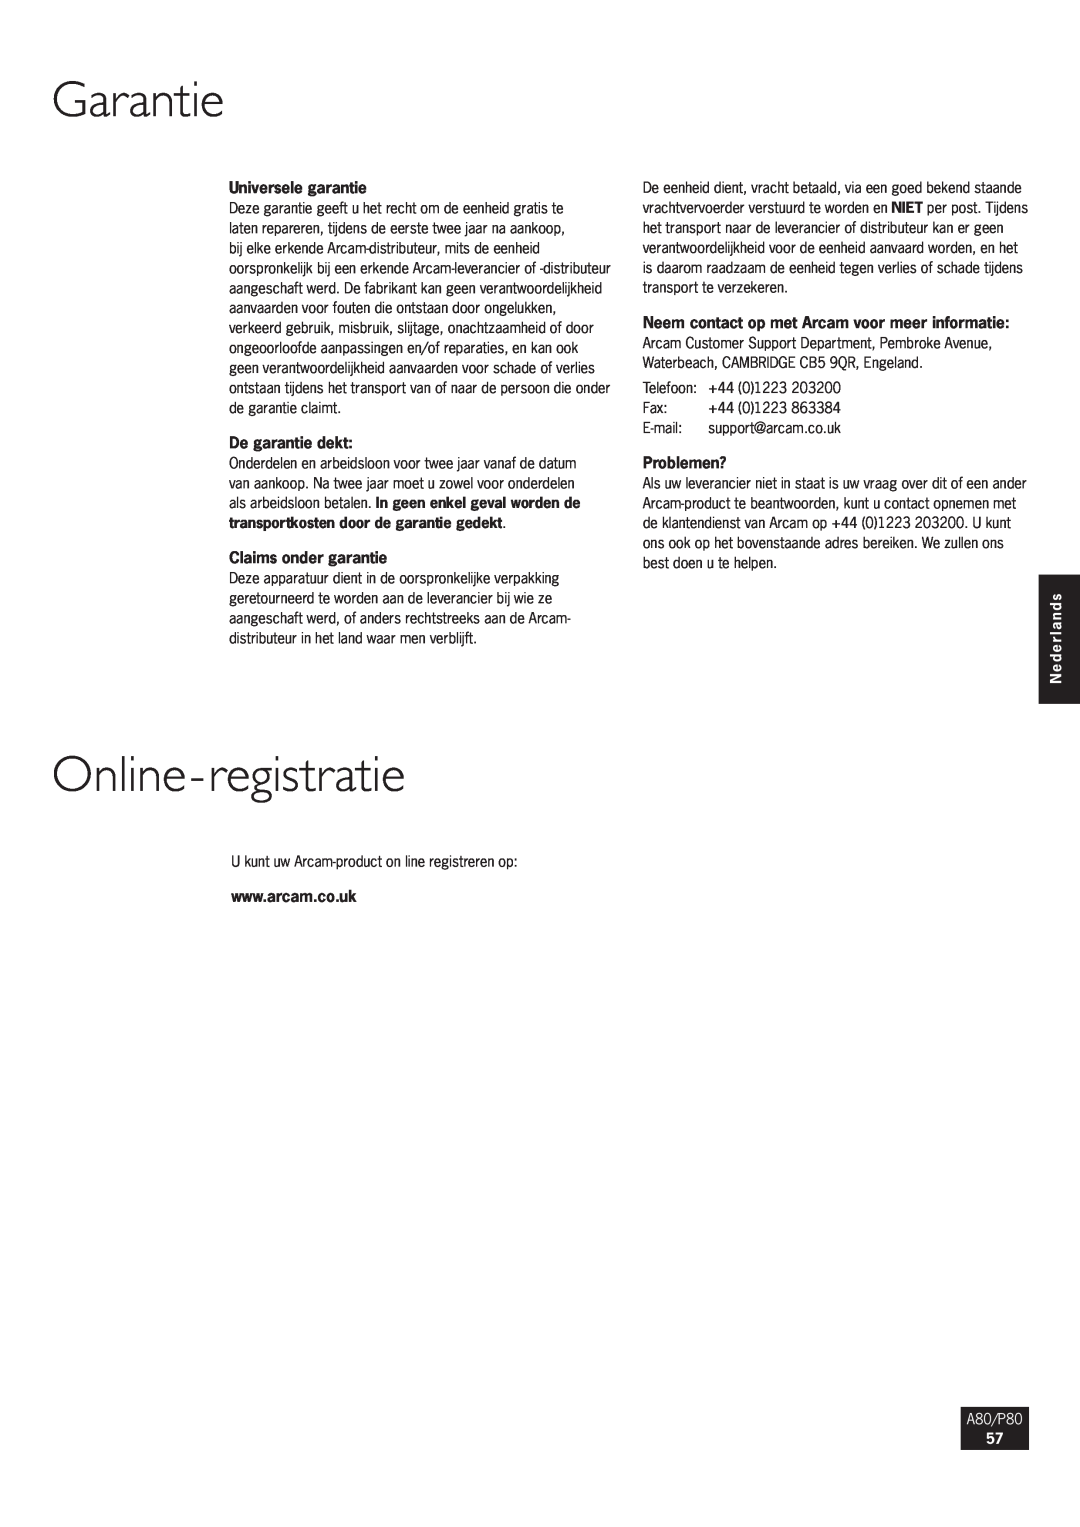 Arcam Online-registratie, Universele garantie, De garantie dekt, Claims onder garantie, Problemen?, Garantie, A80/P80 